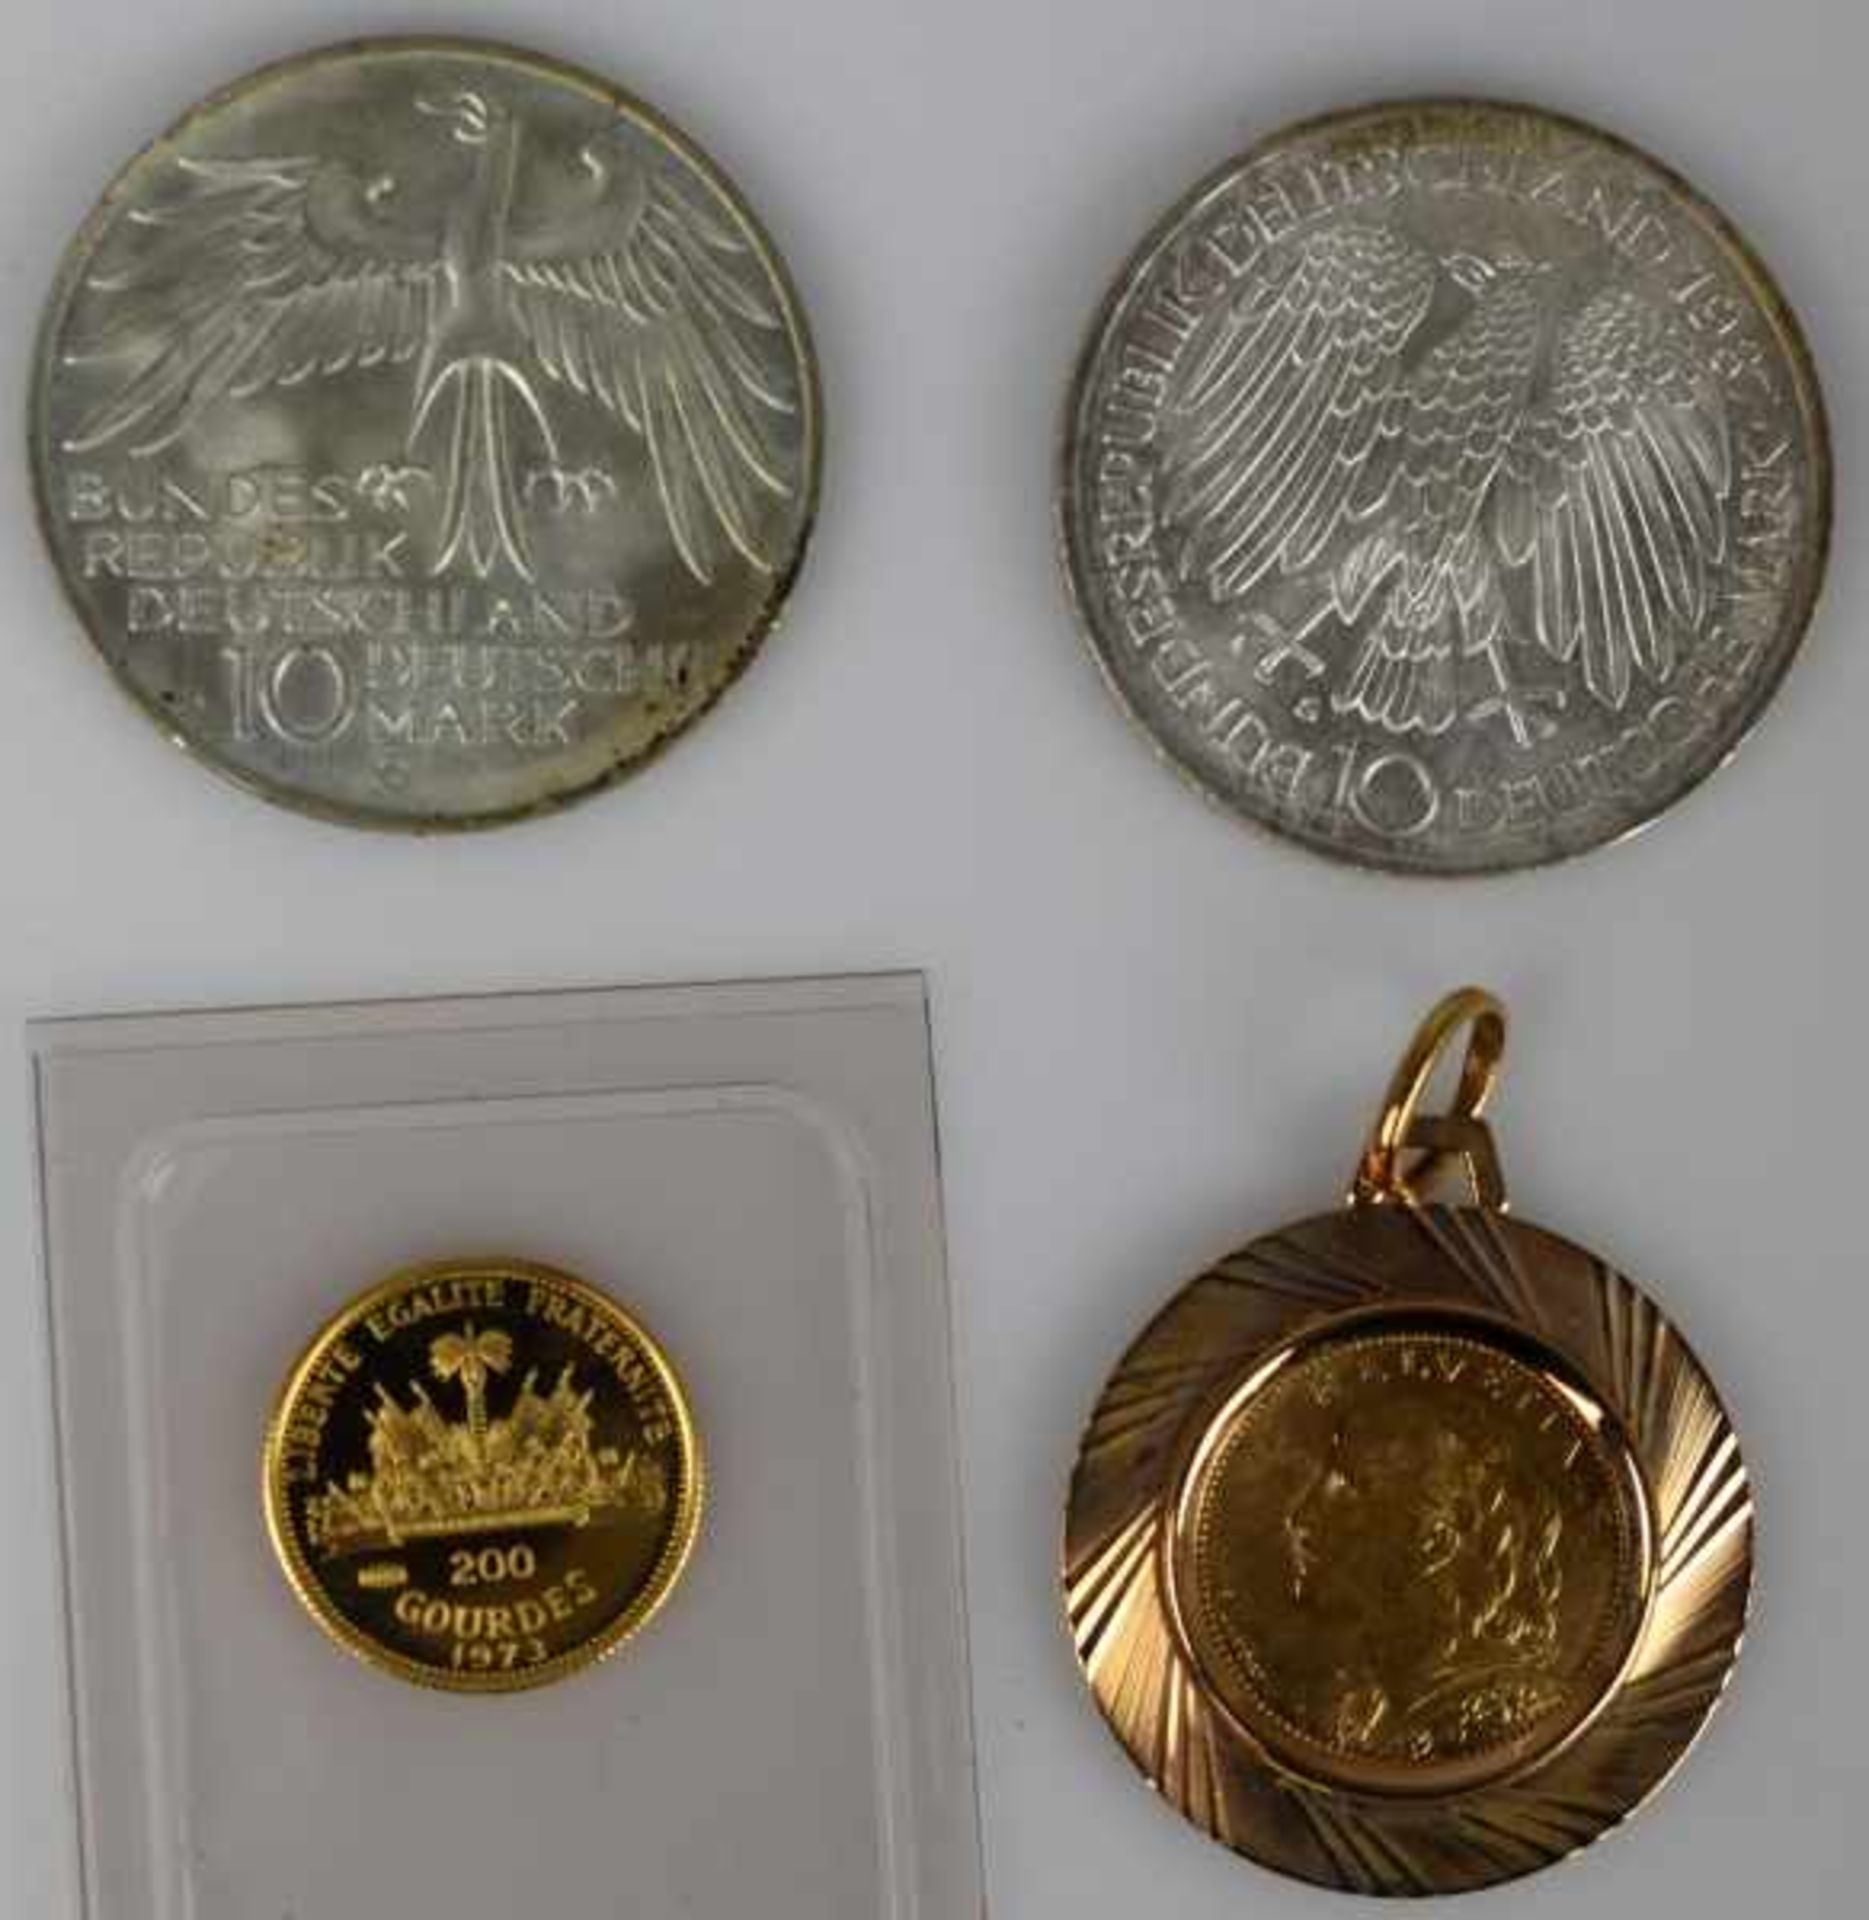 MÜNZEN-LOT 1 Münzanhänger mit Münze 10Fr. Schweiz Nachprägung in Fassung 14ct, 8,3g -1 Goldmünze 200